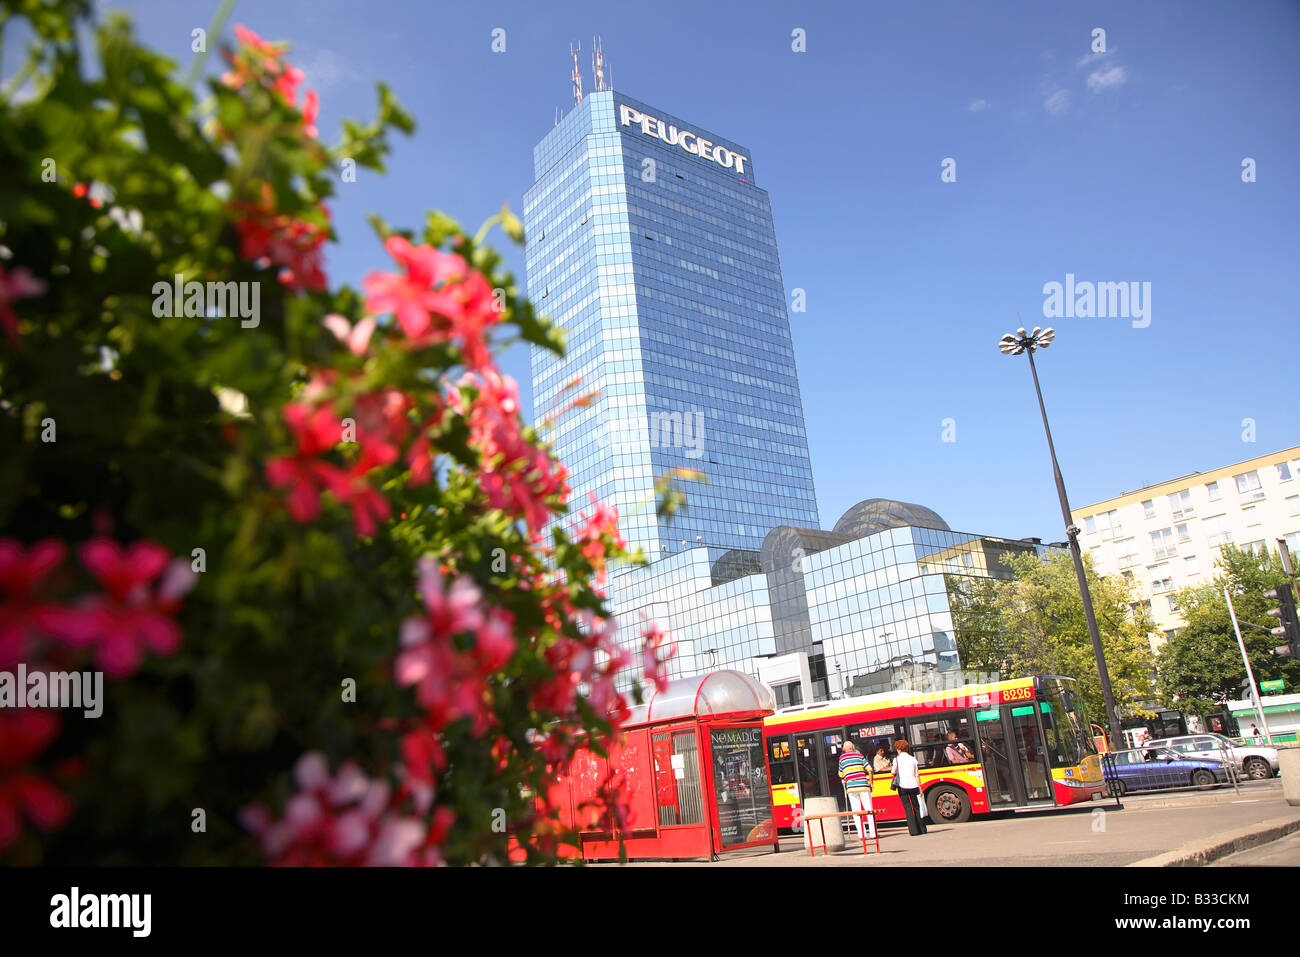 Warsaw, Warszawa, Poland, Blekitny Wiezowiec, Peugeot tower Stock Photo